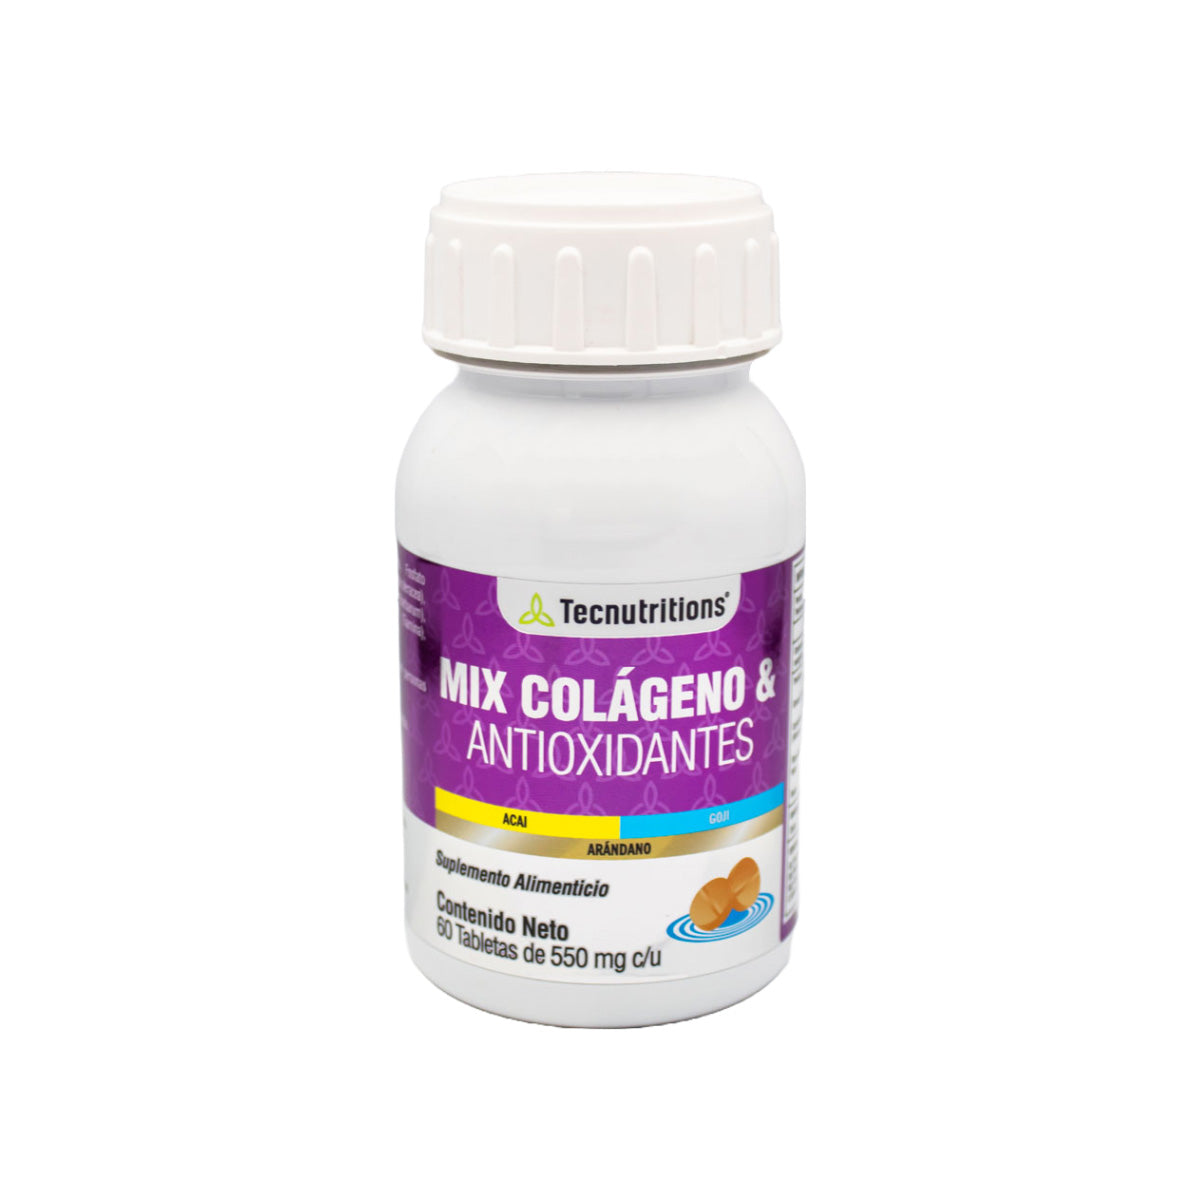 Suplemento alimenticio Mix Colágeno y Antioxidantes, 60 tabs, con colágeno hidrolizado, goji, arándano